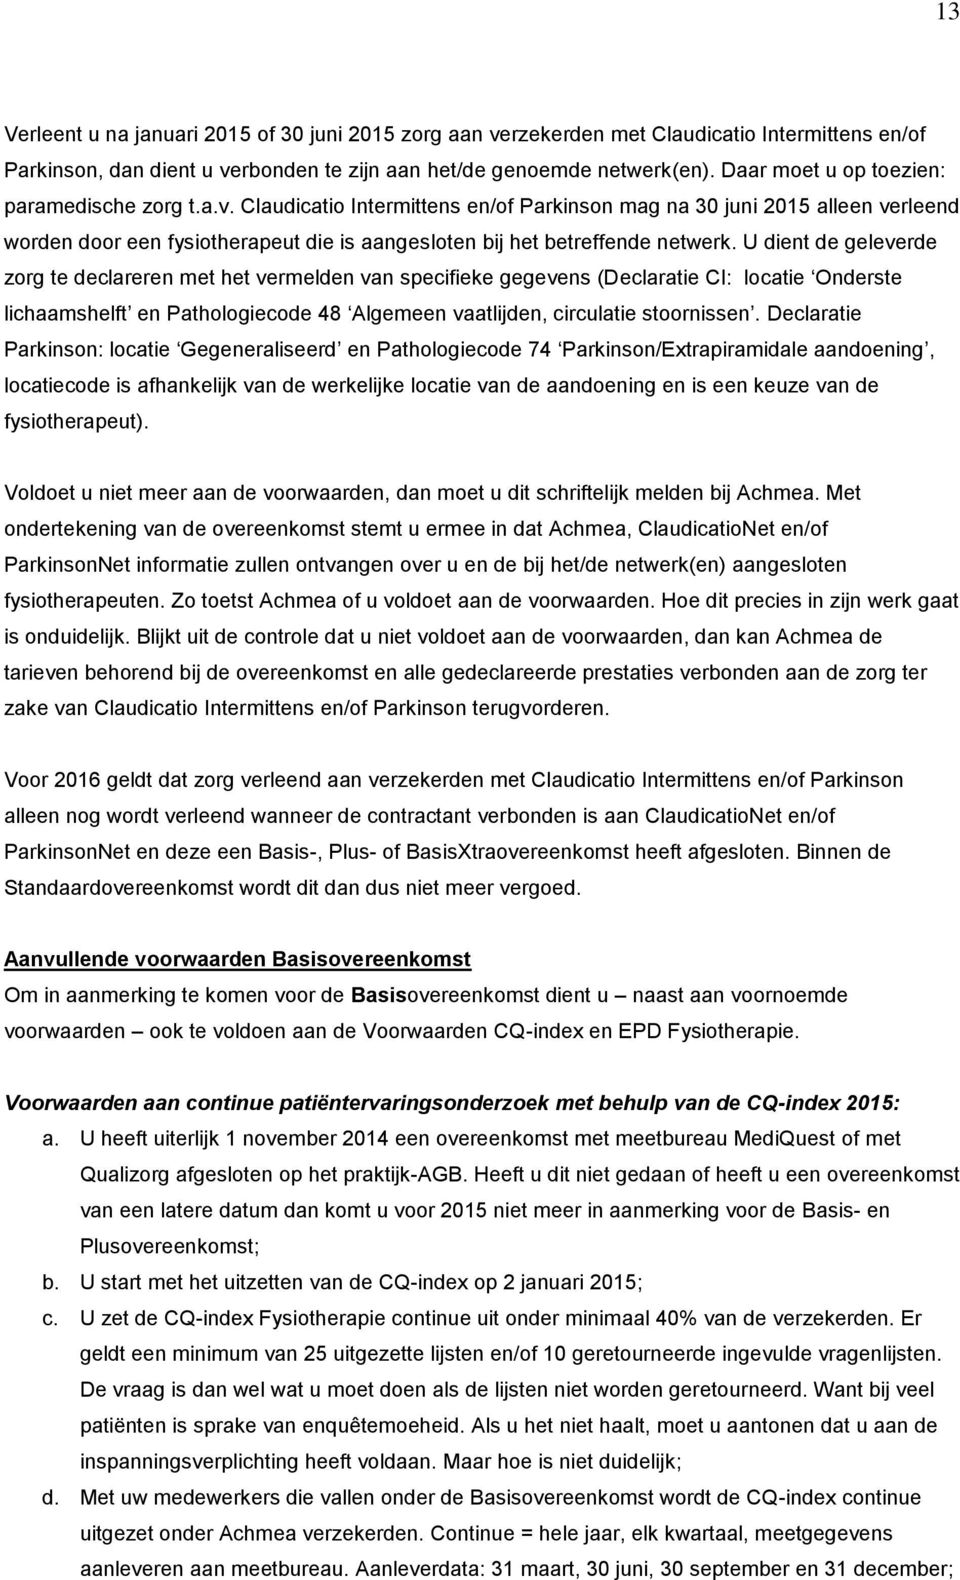 Claudicatio Intermittens en/of Parkinson mag na 30 juni 2015 alleen verleend worden door een fysiotherapeut die is aangesloten bij het betreffende netwerk.